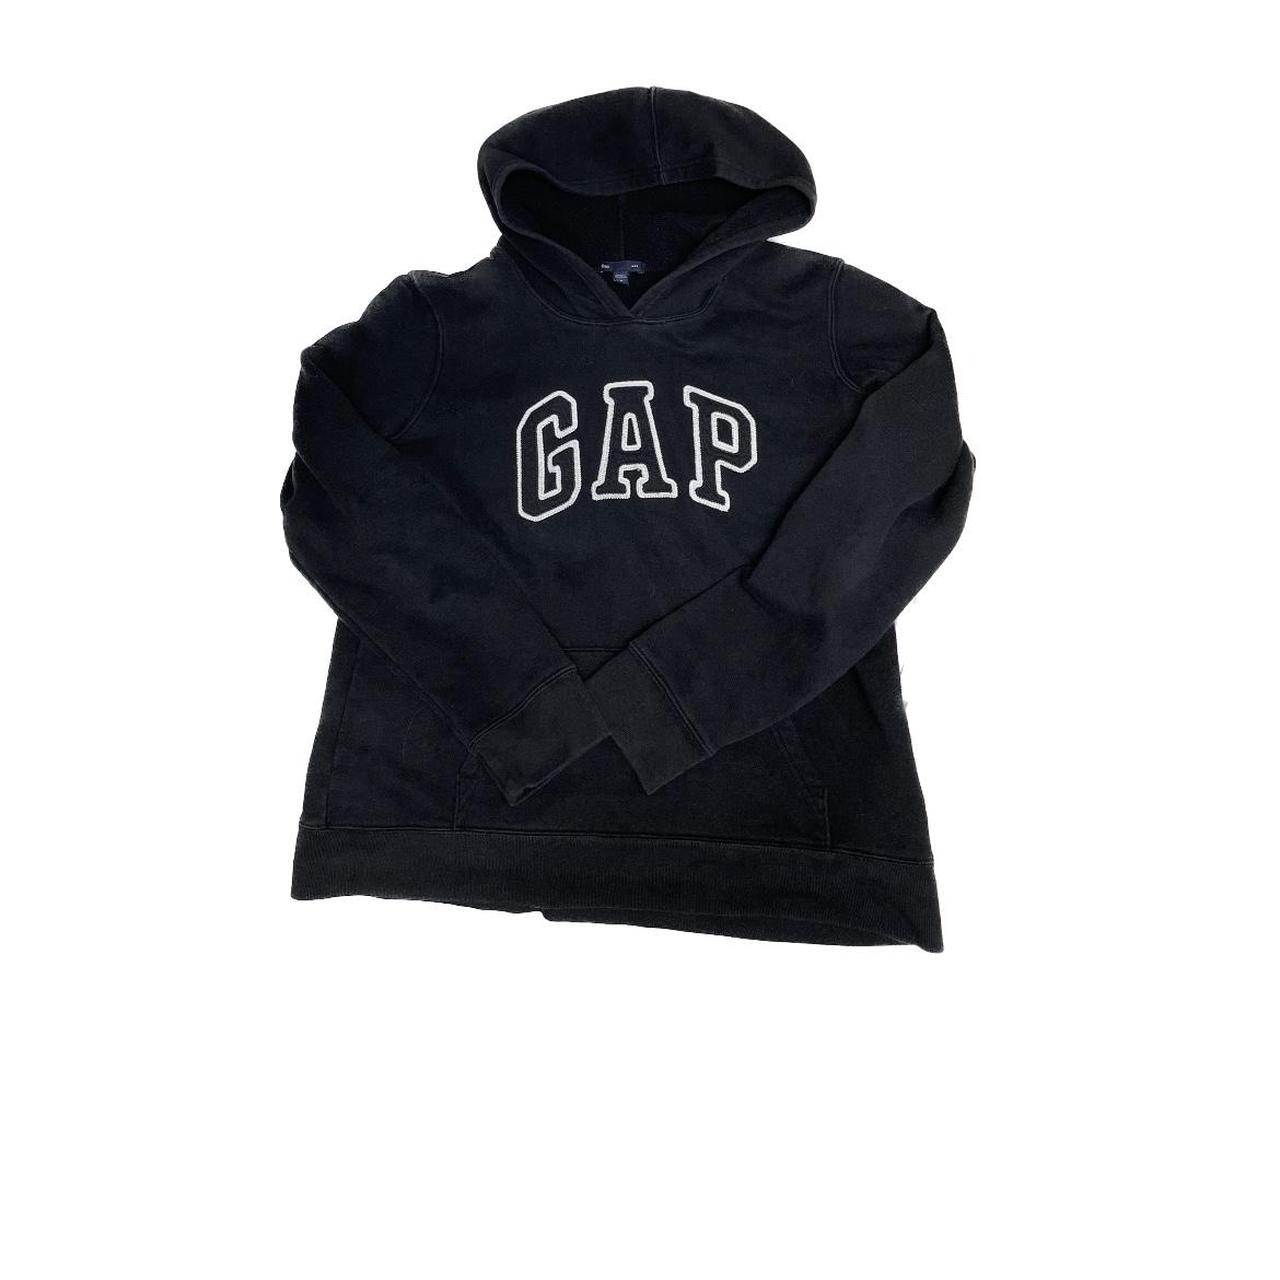 Original GAP hoodie in good condition. Worn once.... - Depop